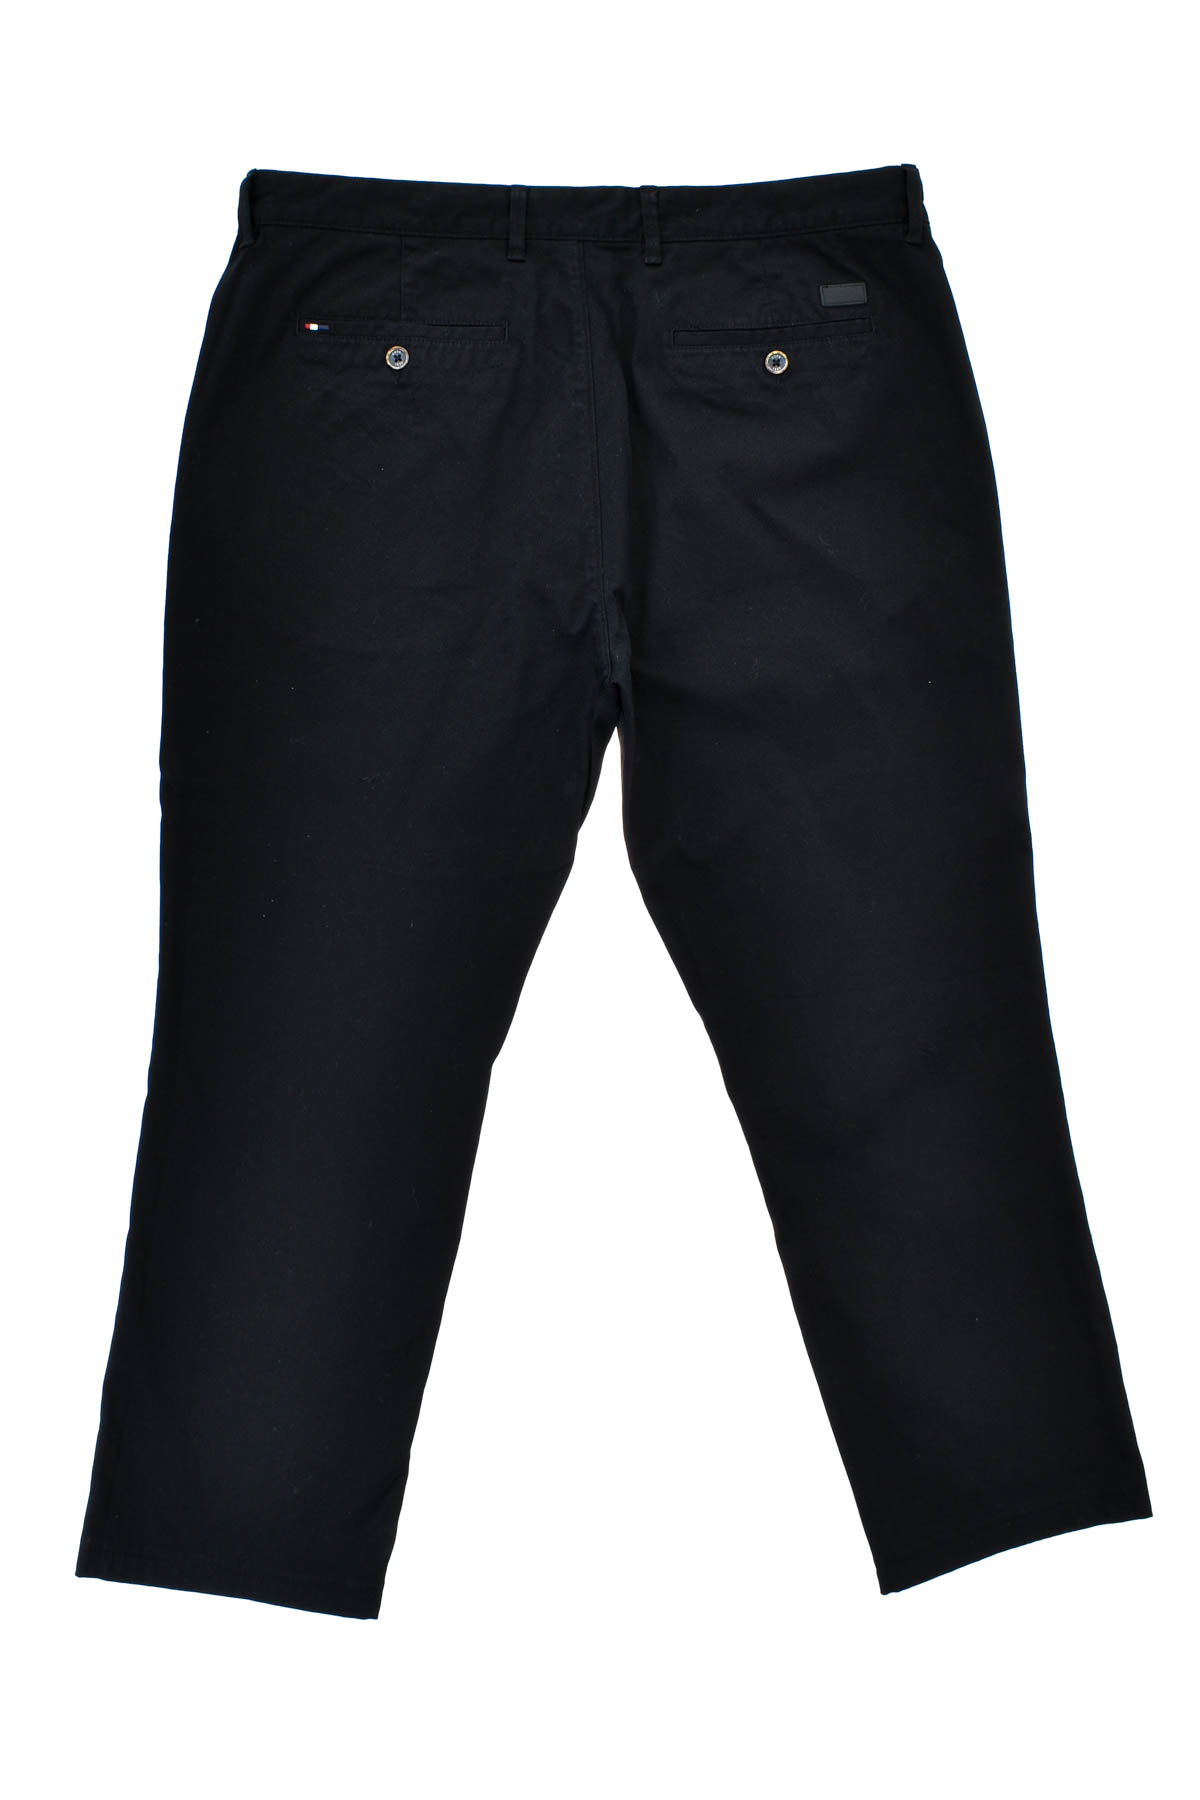 Pantalon pentru bărbați - U.S. Polo ASSN. - 1